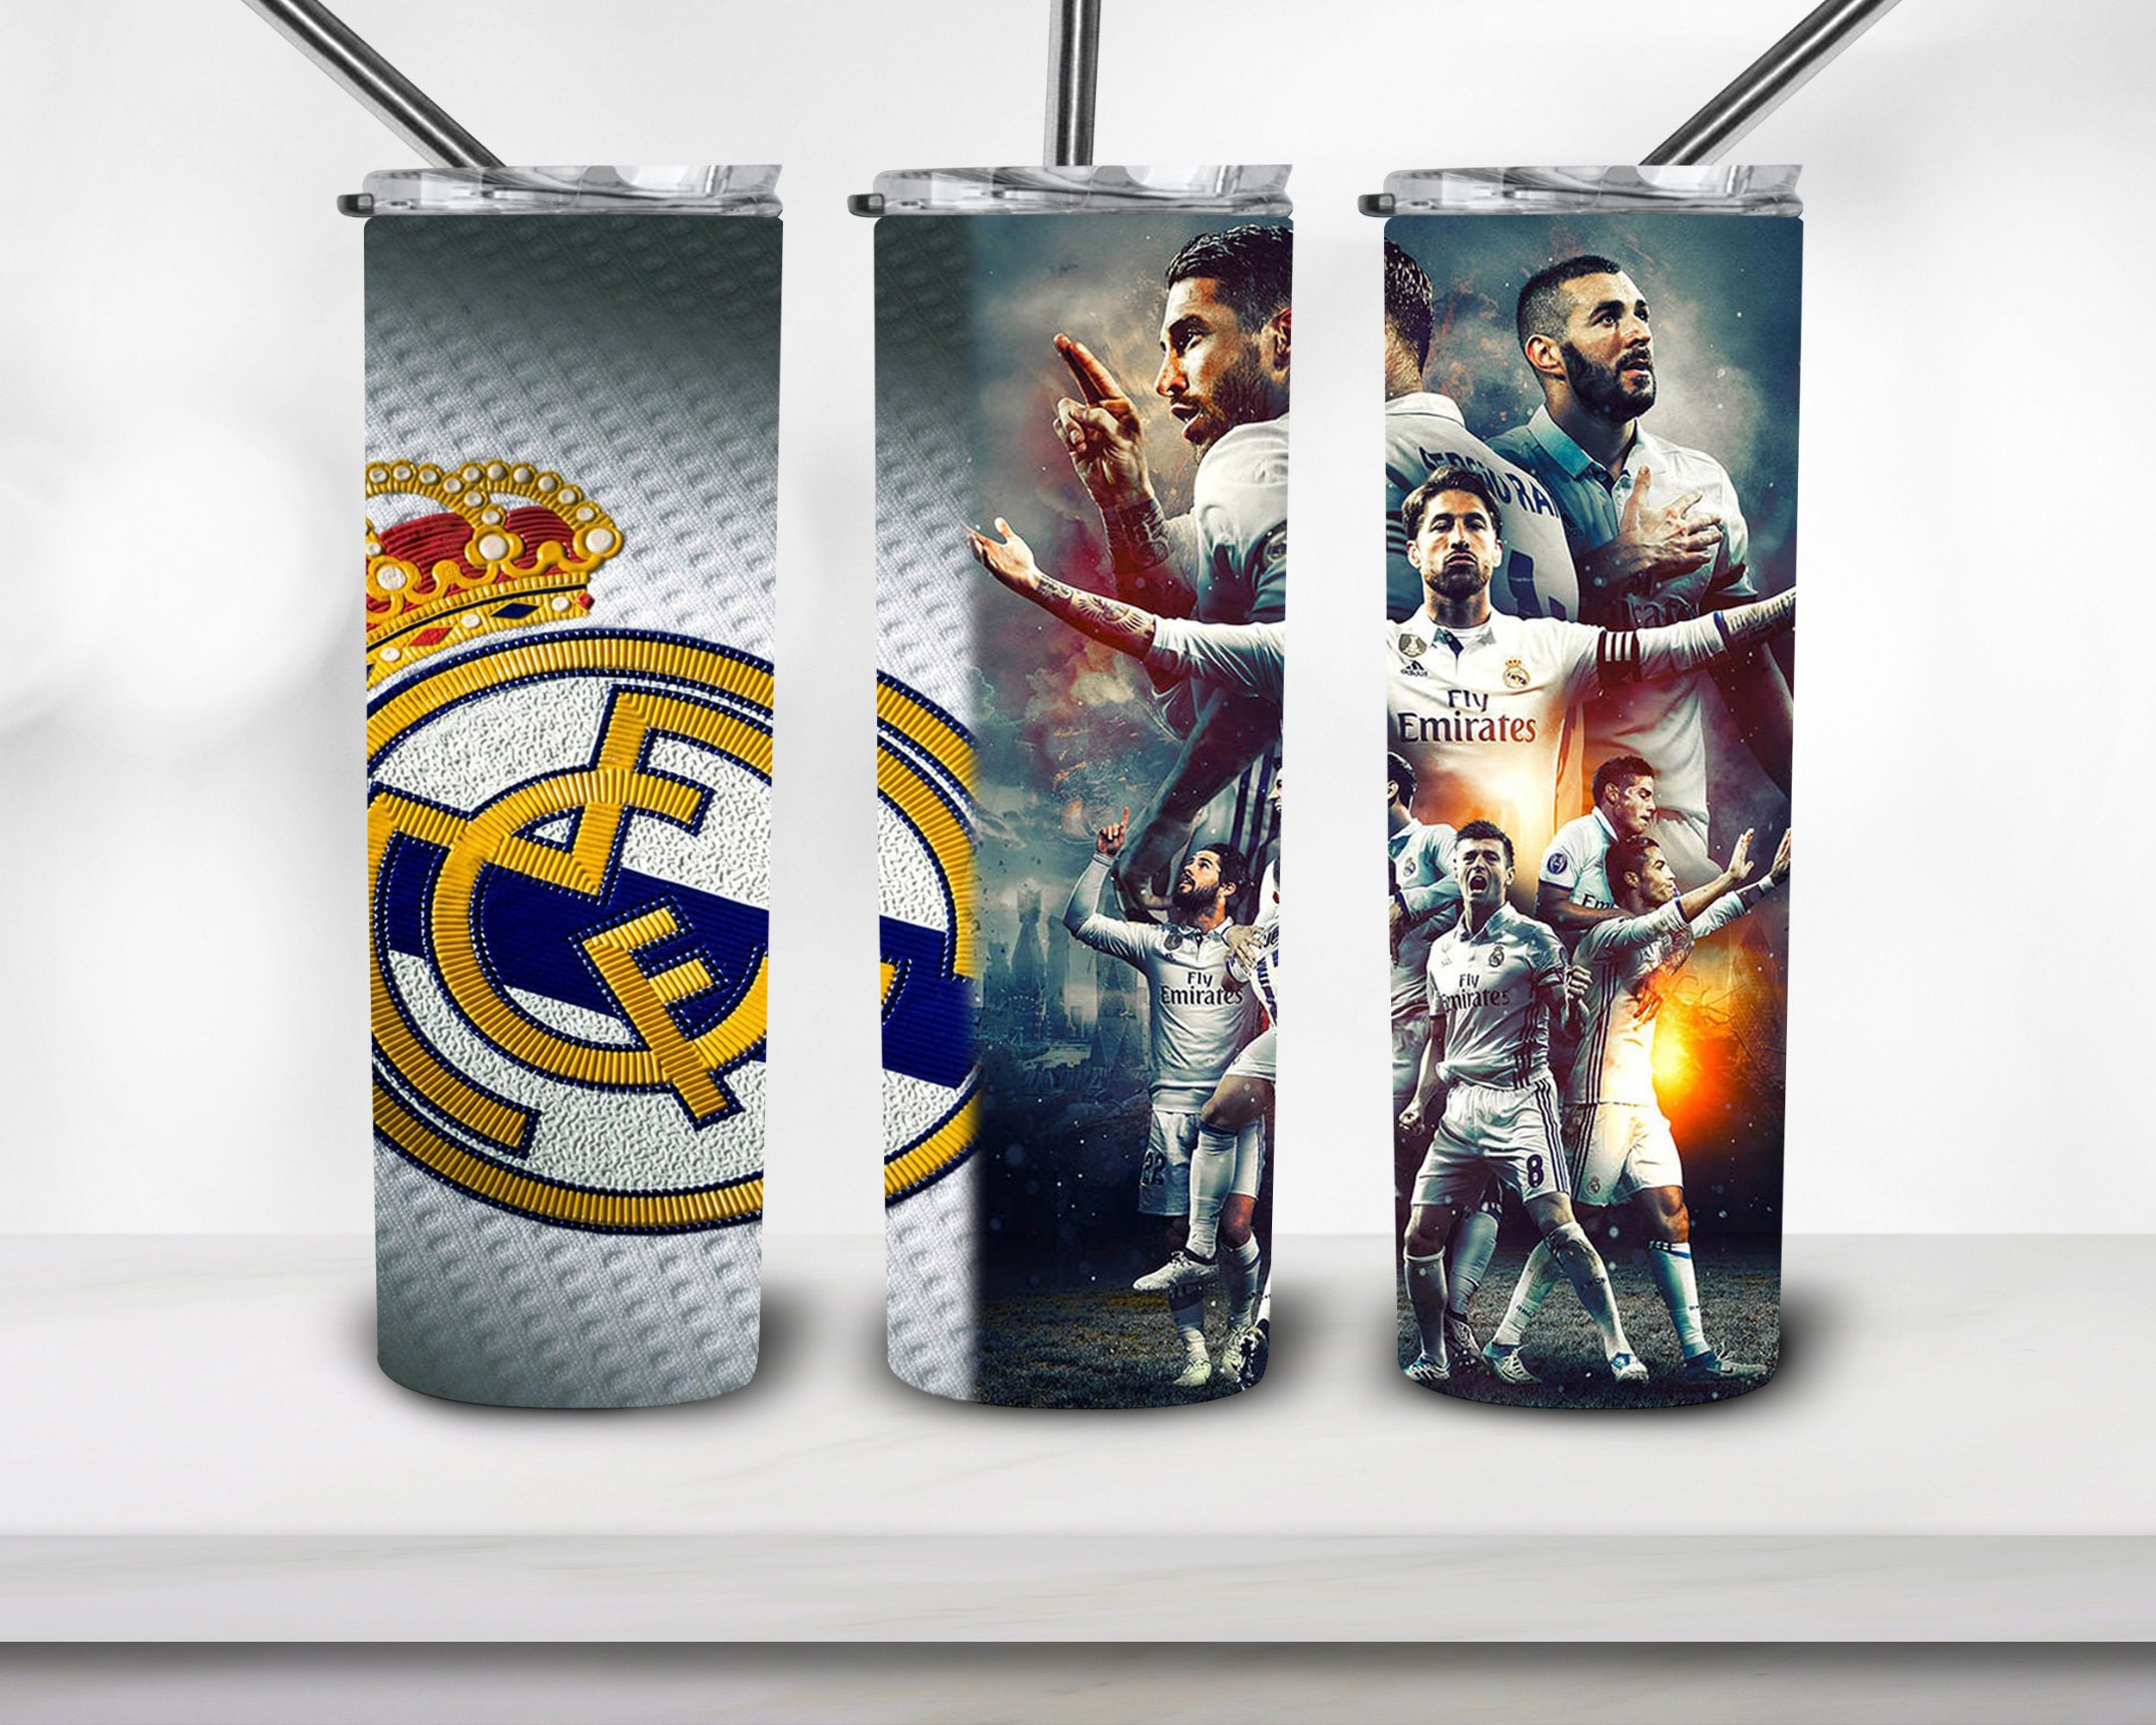 100 x Pegatinas Real Madrid inspirado por Ultras la bufanda, pin y póster  RMCF